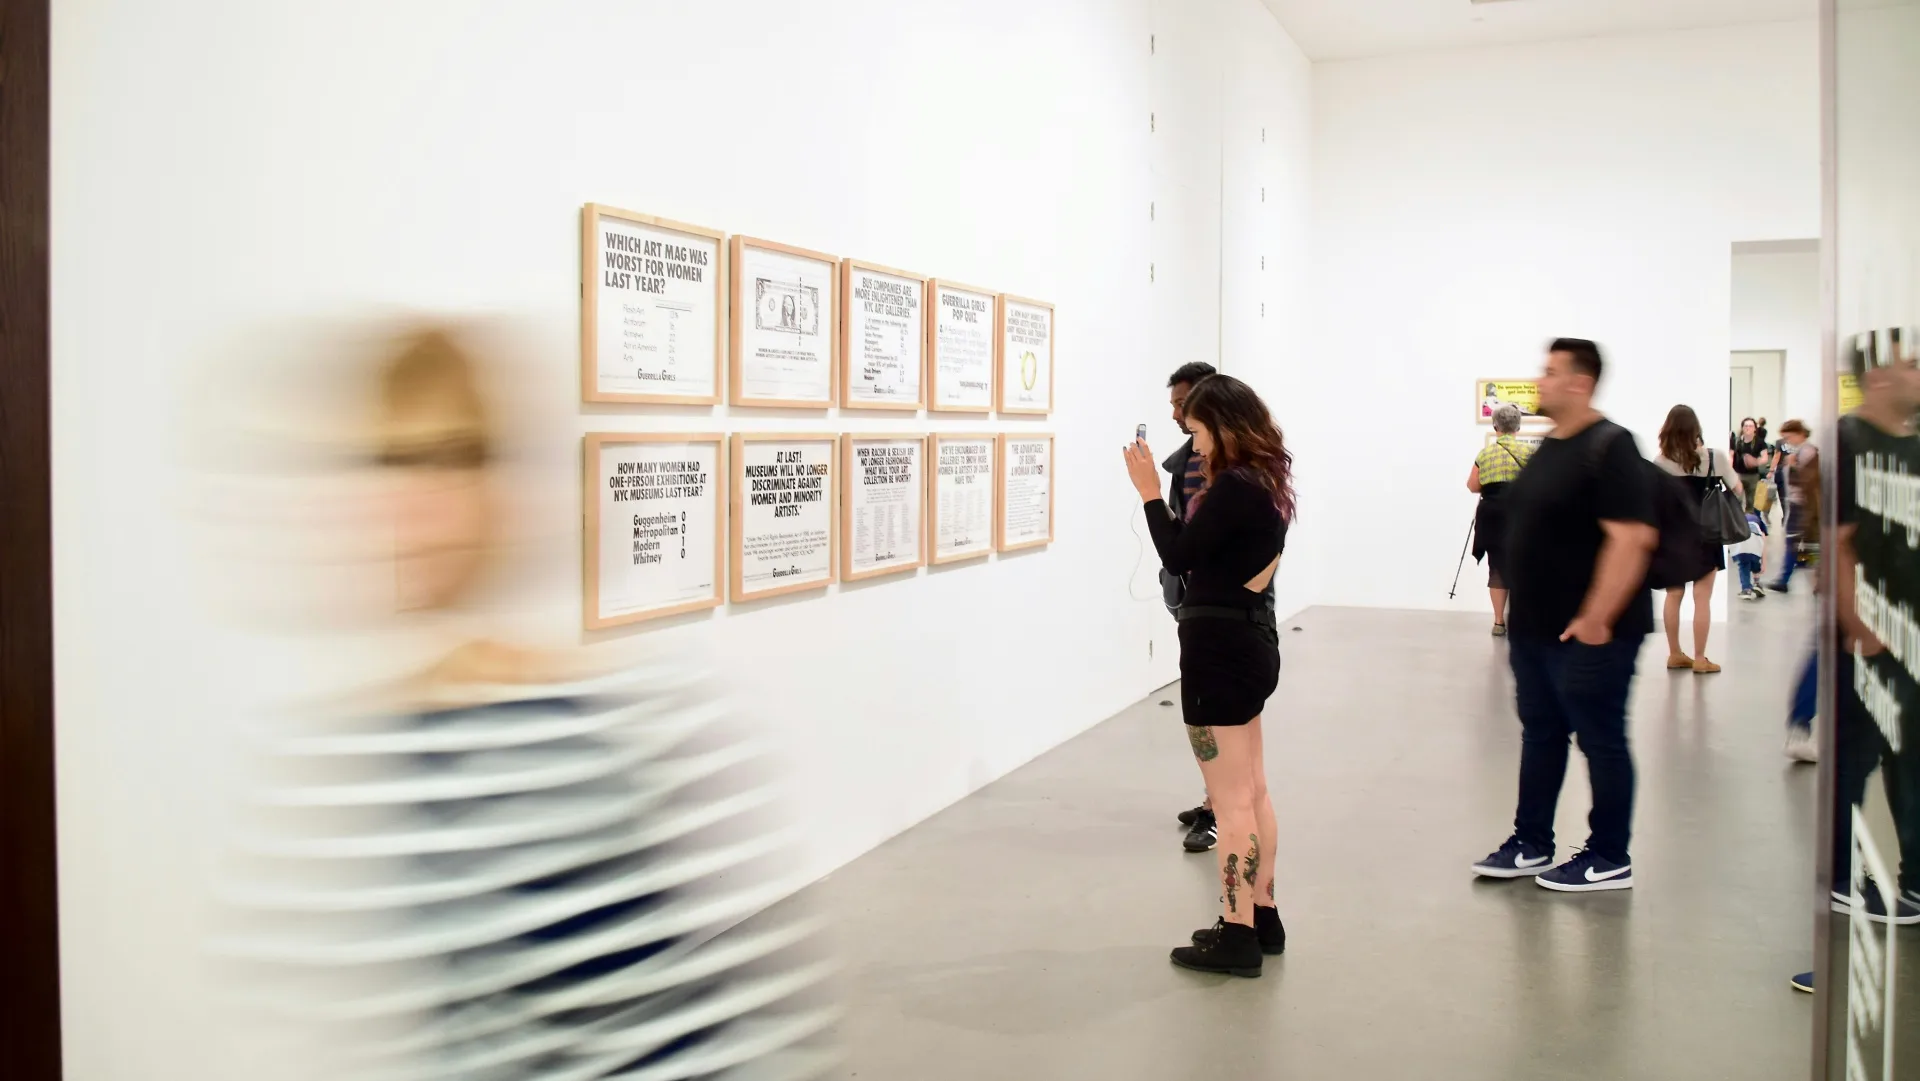 Buenos Aires: el Museo Moderno presentó una nueva muestra de arte